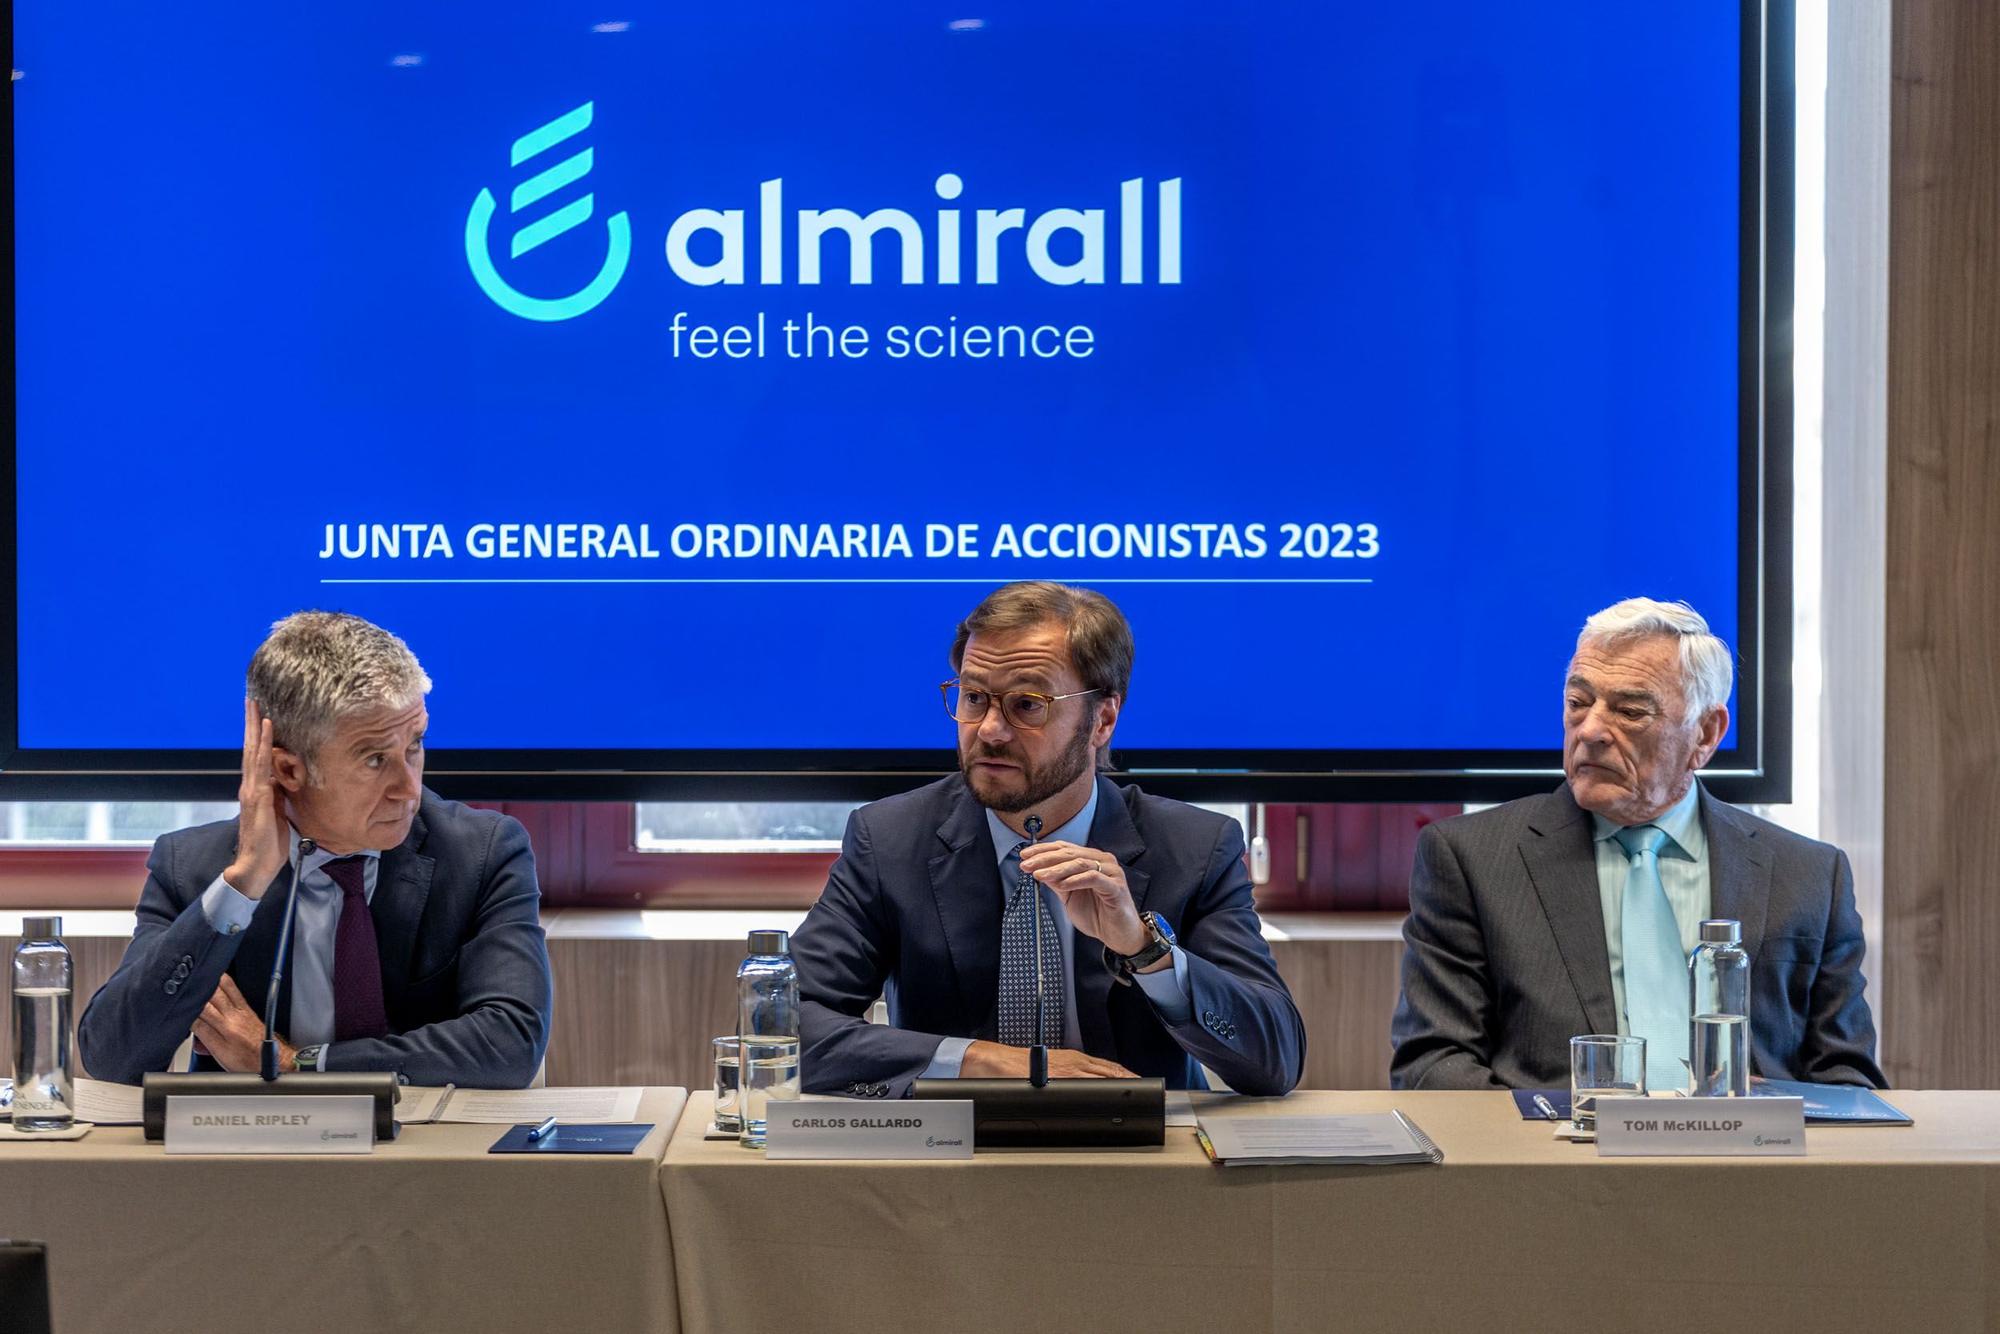 Barcelona 05/05/2023 Eonomía Junta de accionistas de Almirall. Comparece CArlos Gallardo, presidente y consejero delegado de la farmacéutica. AUTOR: JORDI OTIX